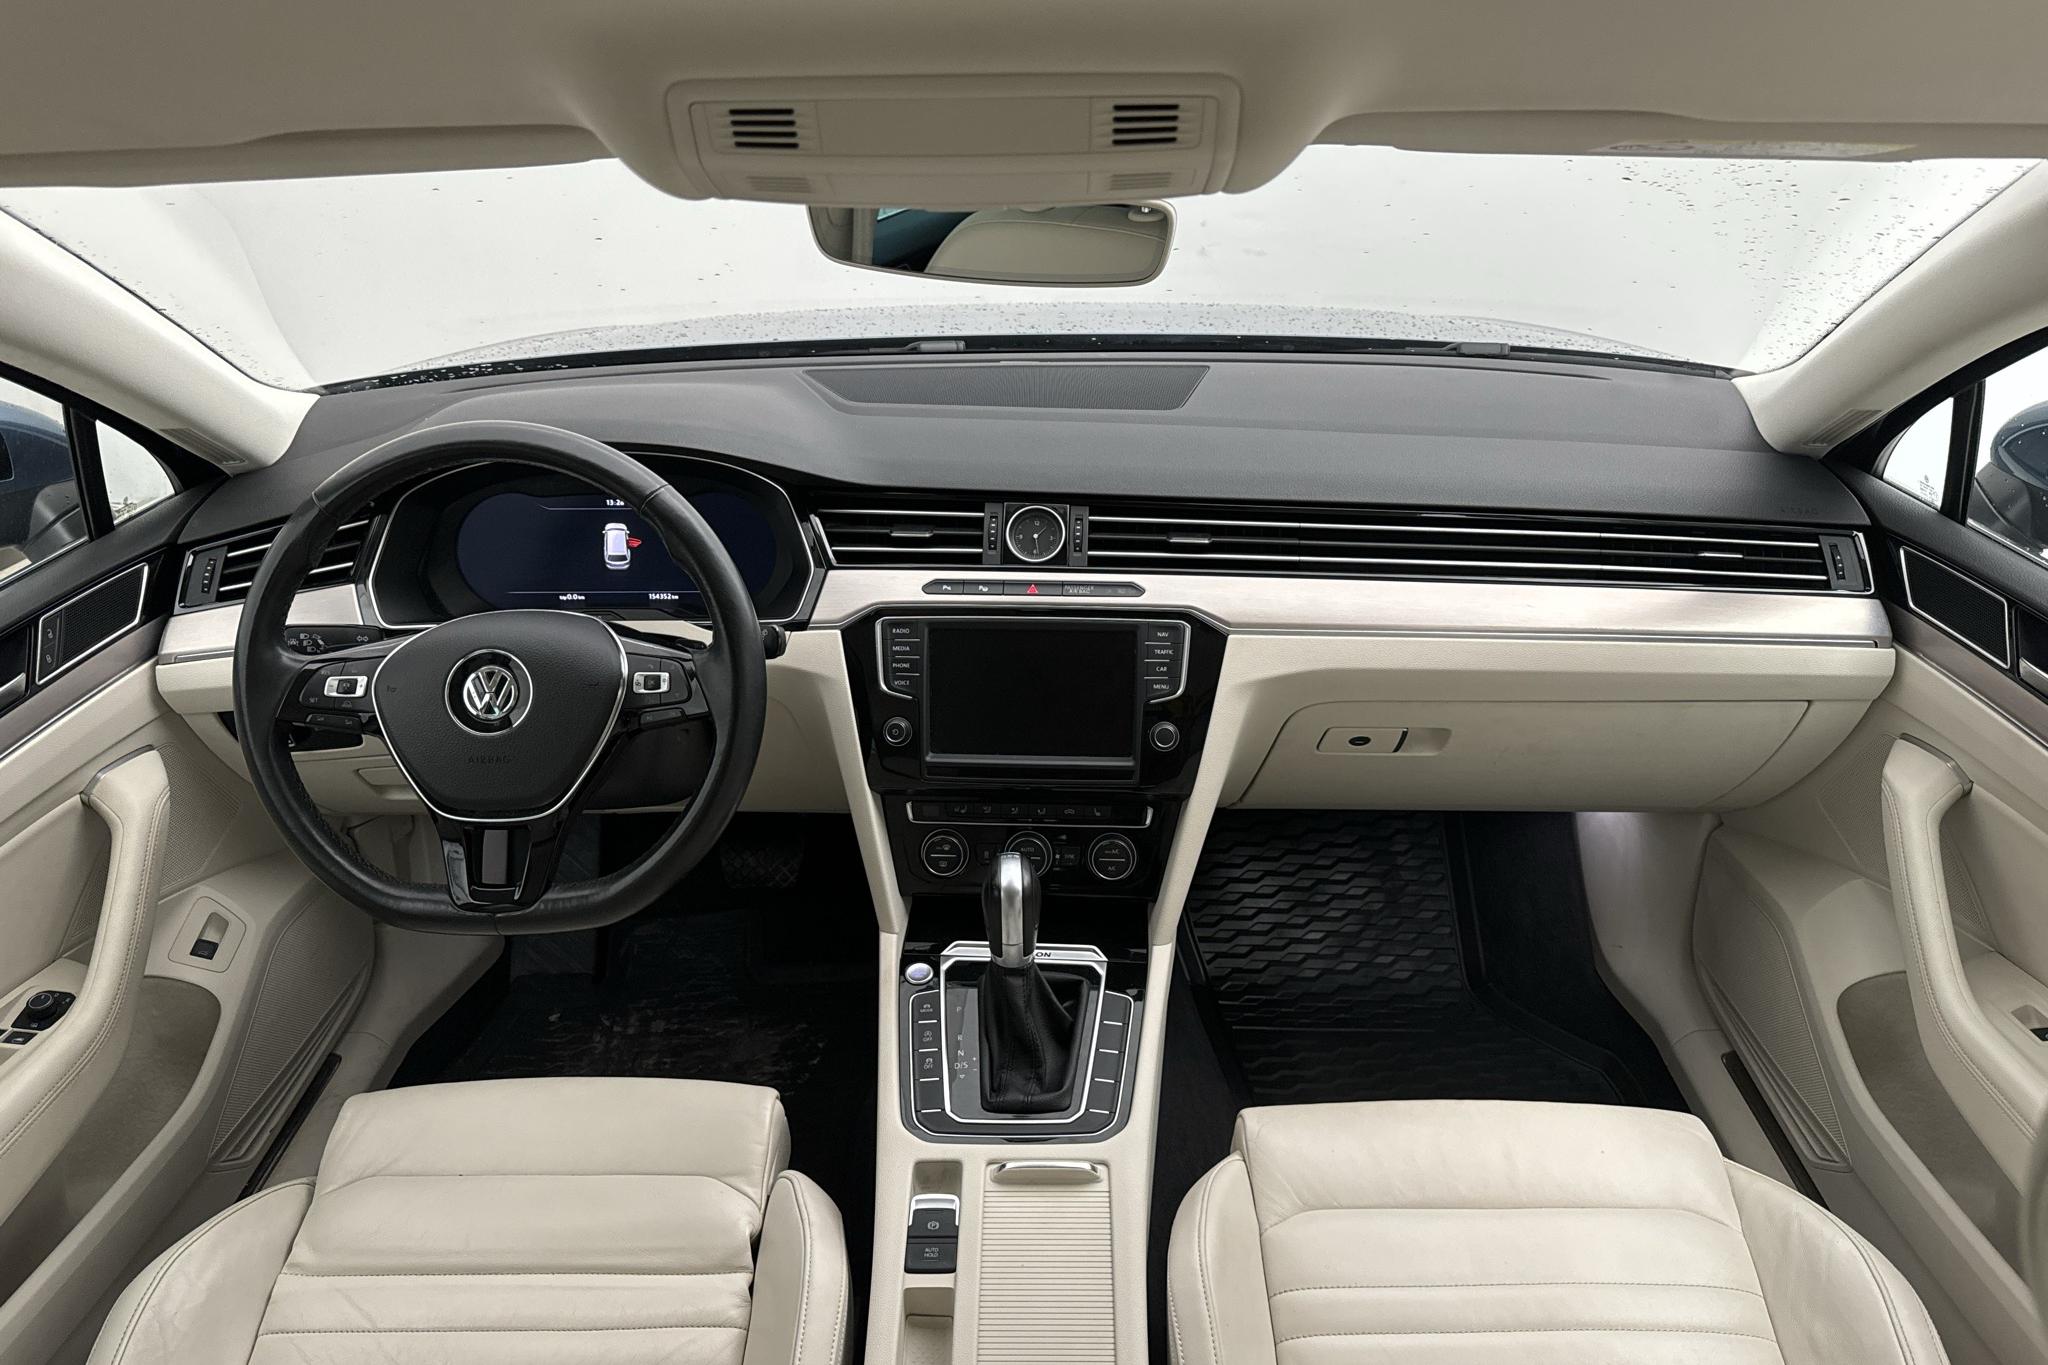 VW Passat 2.0 TDI BiTurbo Sportscombi 4MOTION (240hk) - 15 434 mil - Automat - blå - 2015